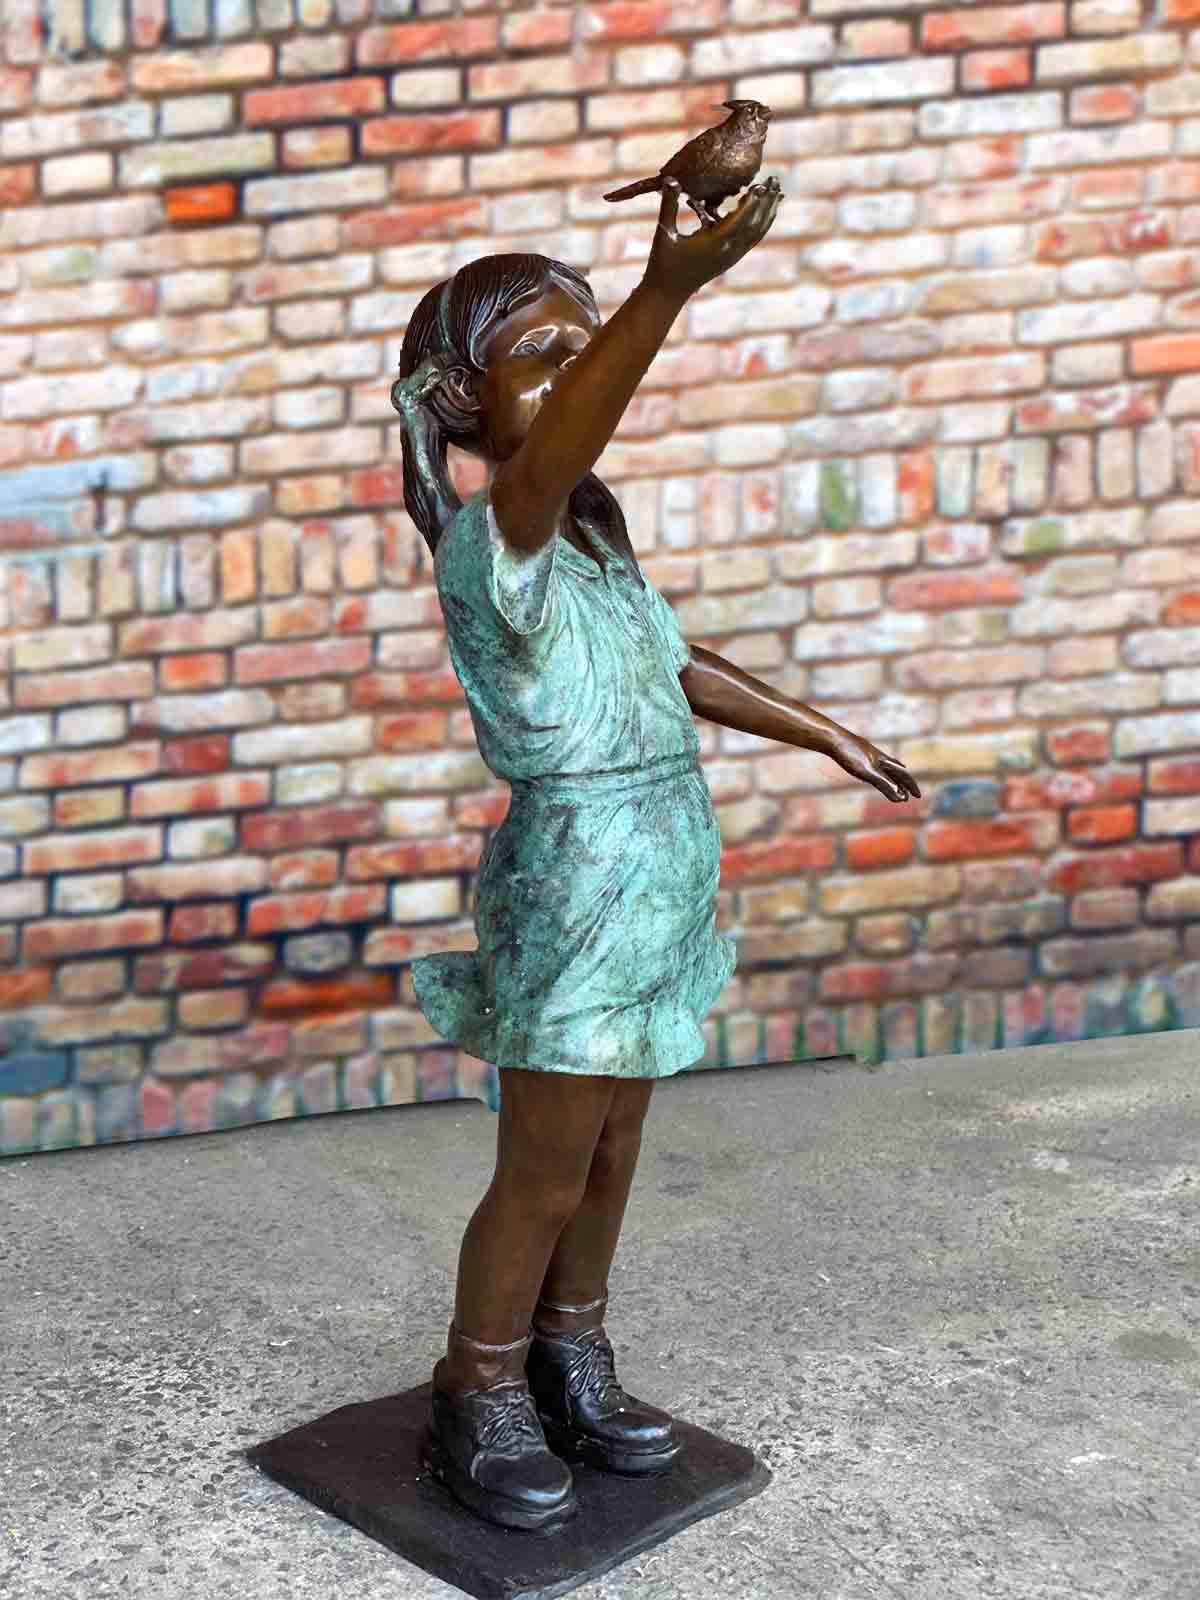 Our custom limited edition lost-wax bronze children's garden statue, 